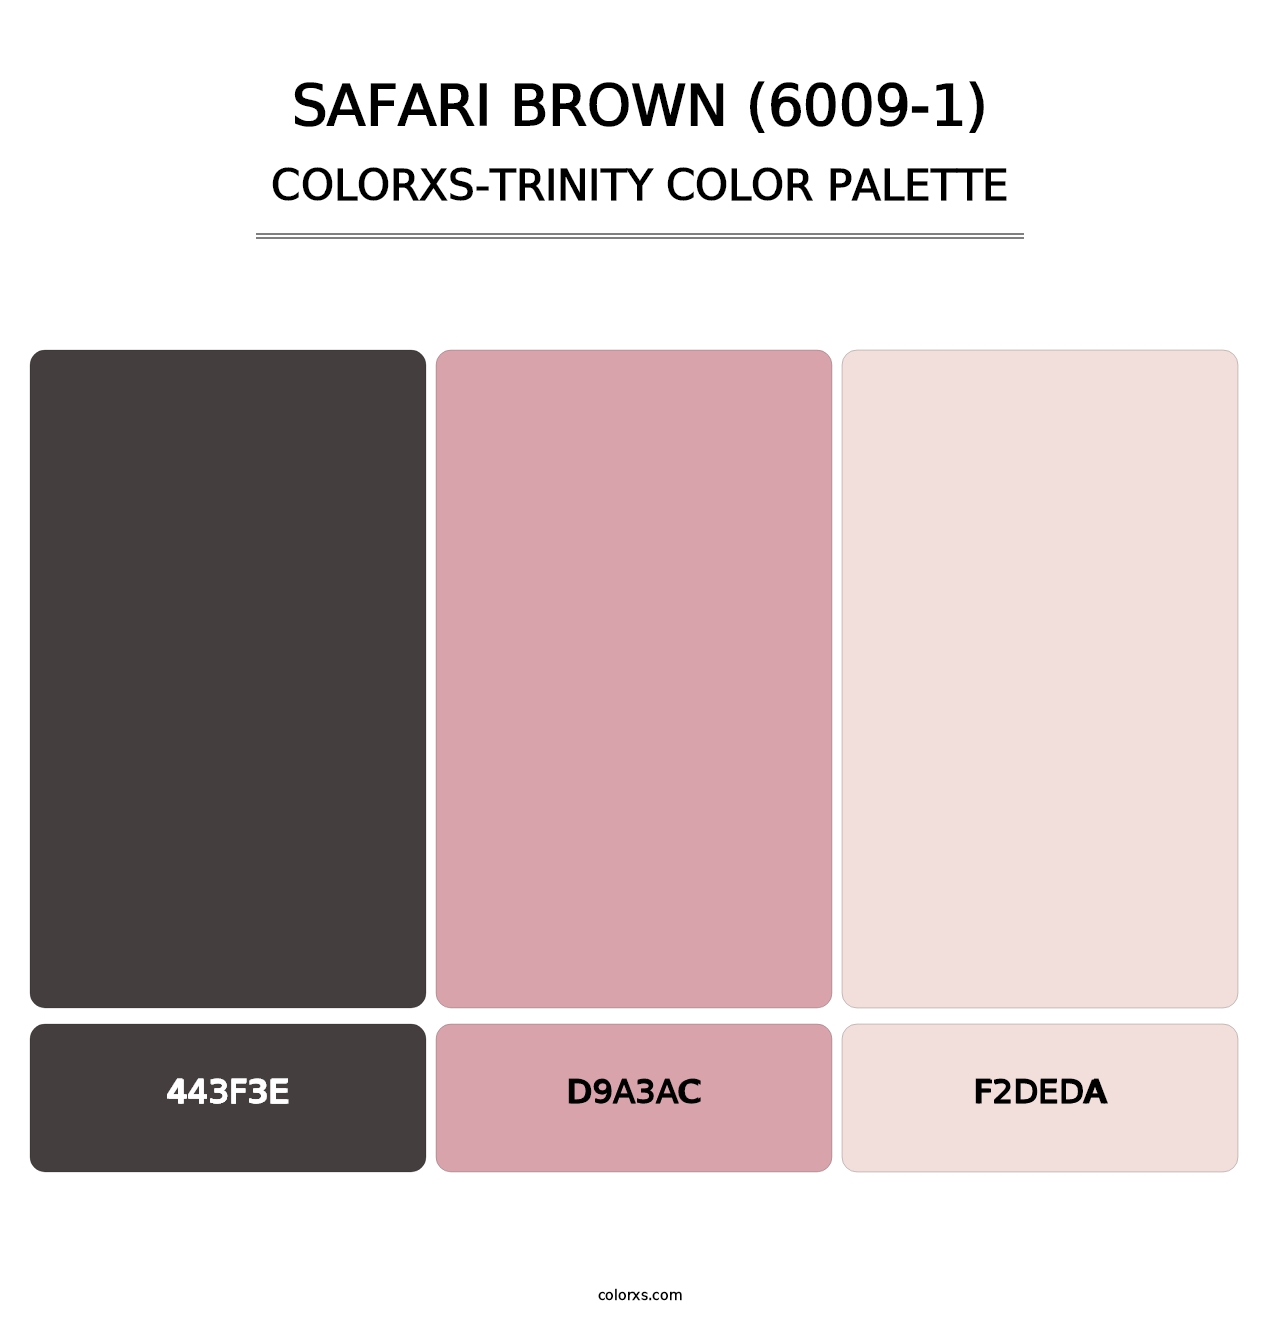 Safari Brown (6009-1) - Colorxs Trinity Palette